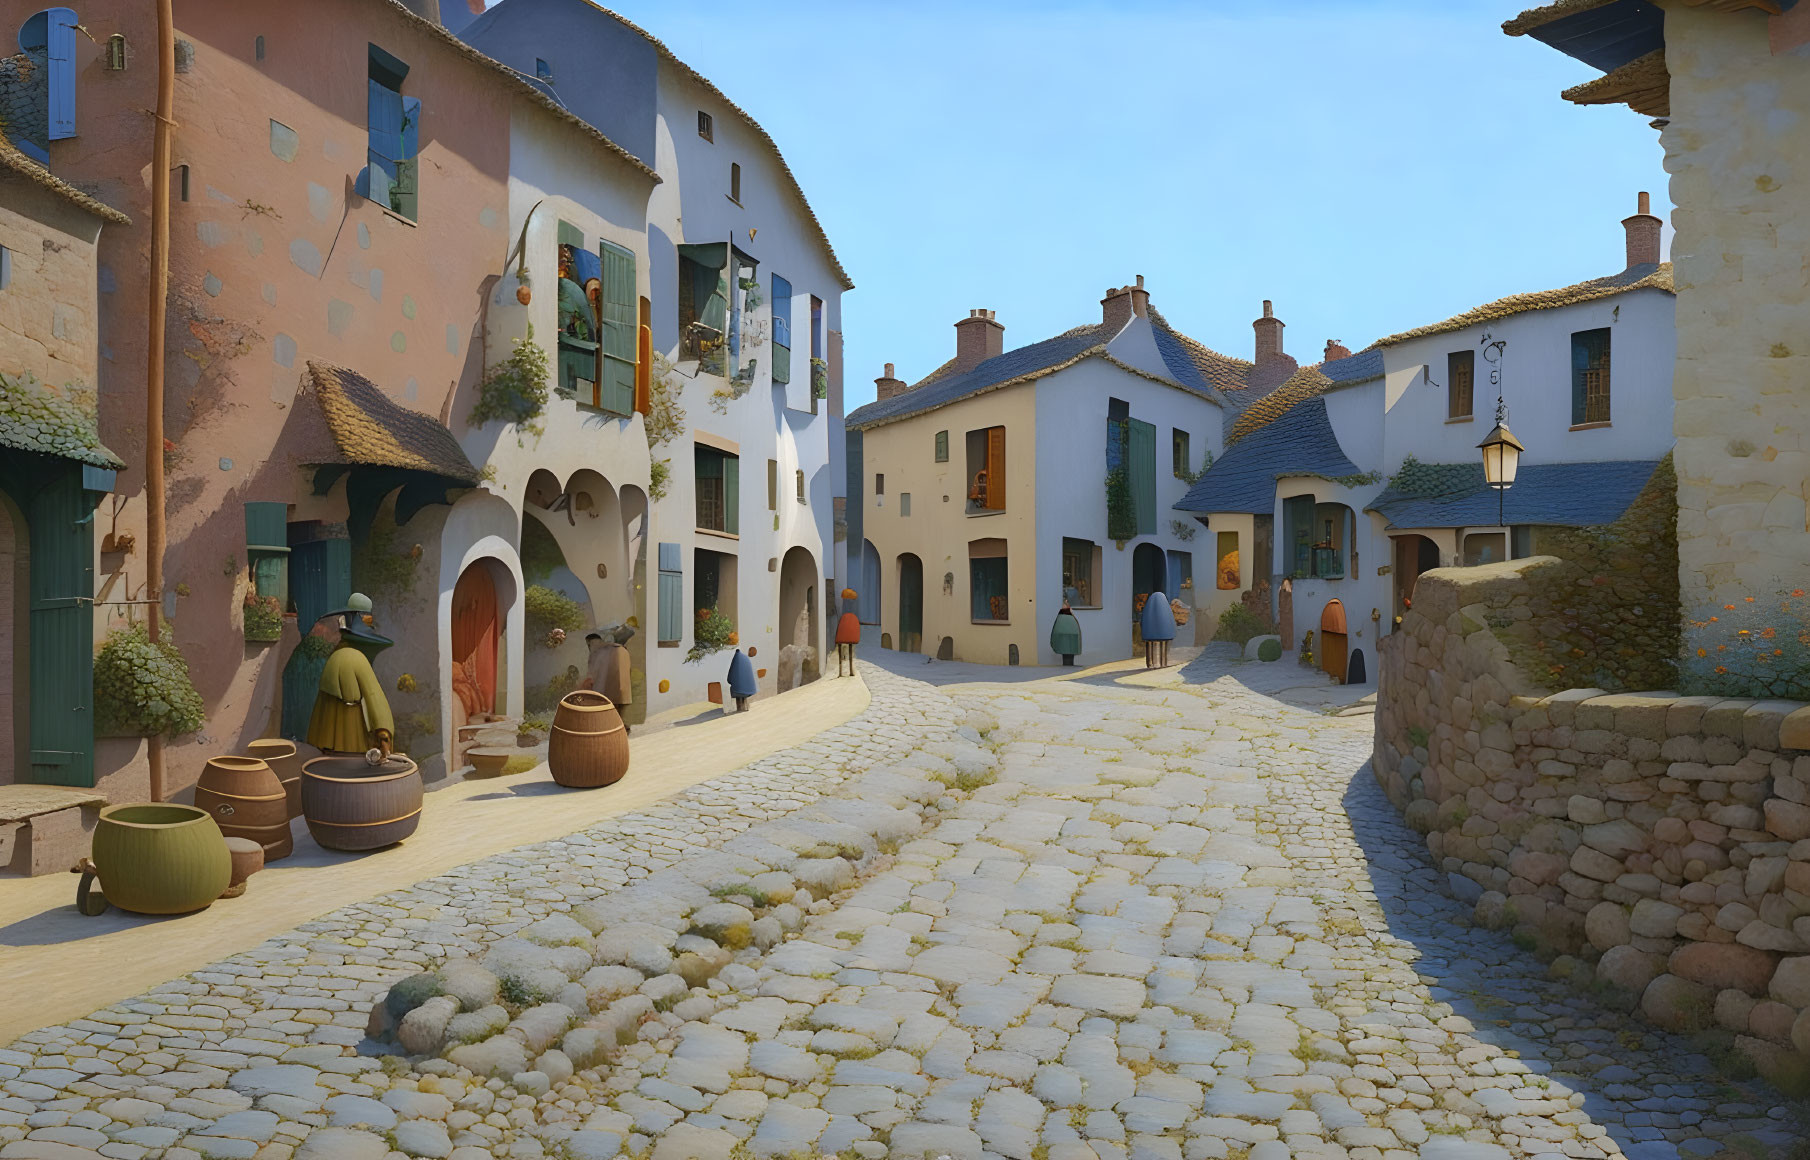 Historic street scene with cobblestones and quaint houses